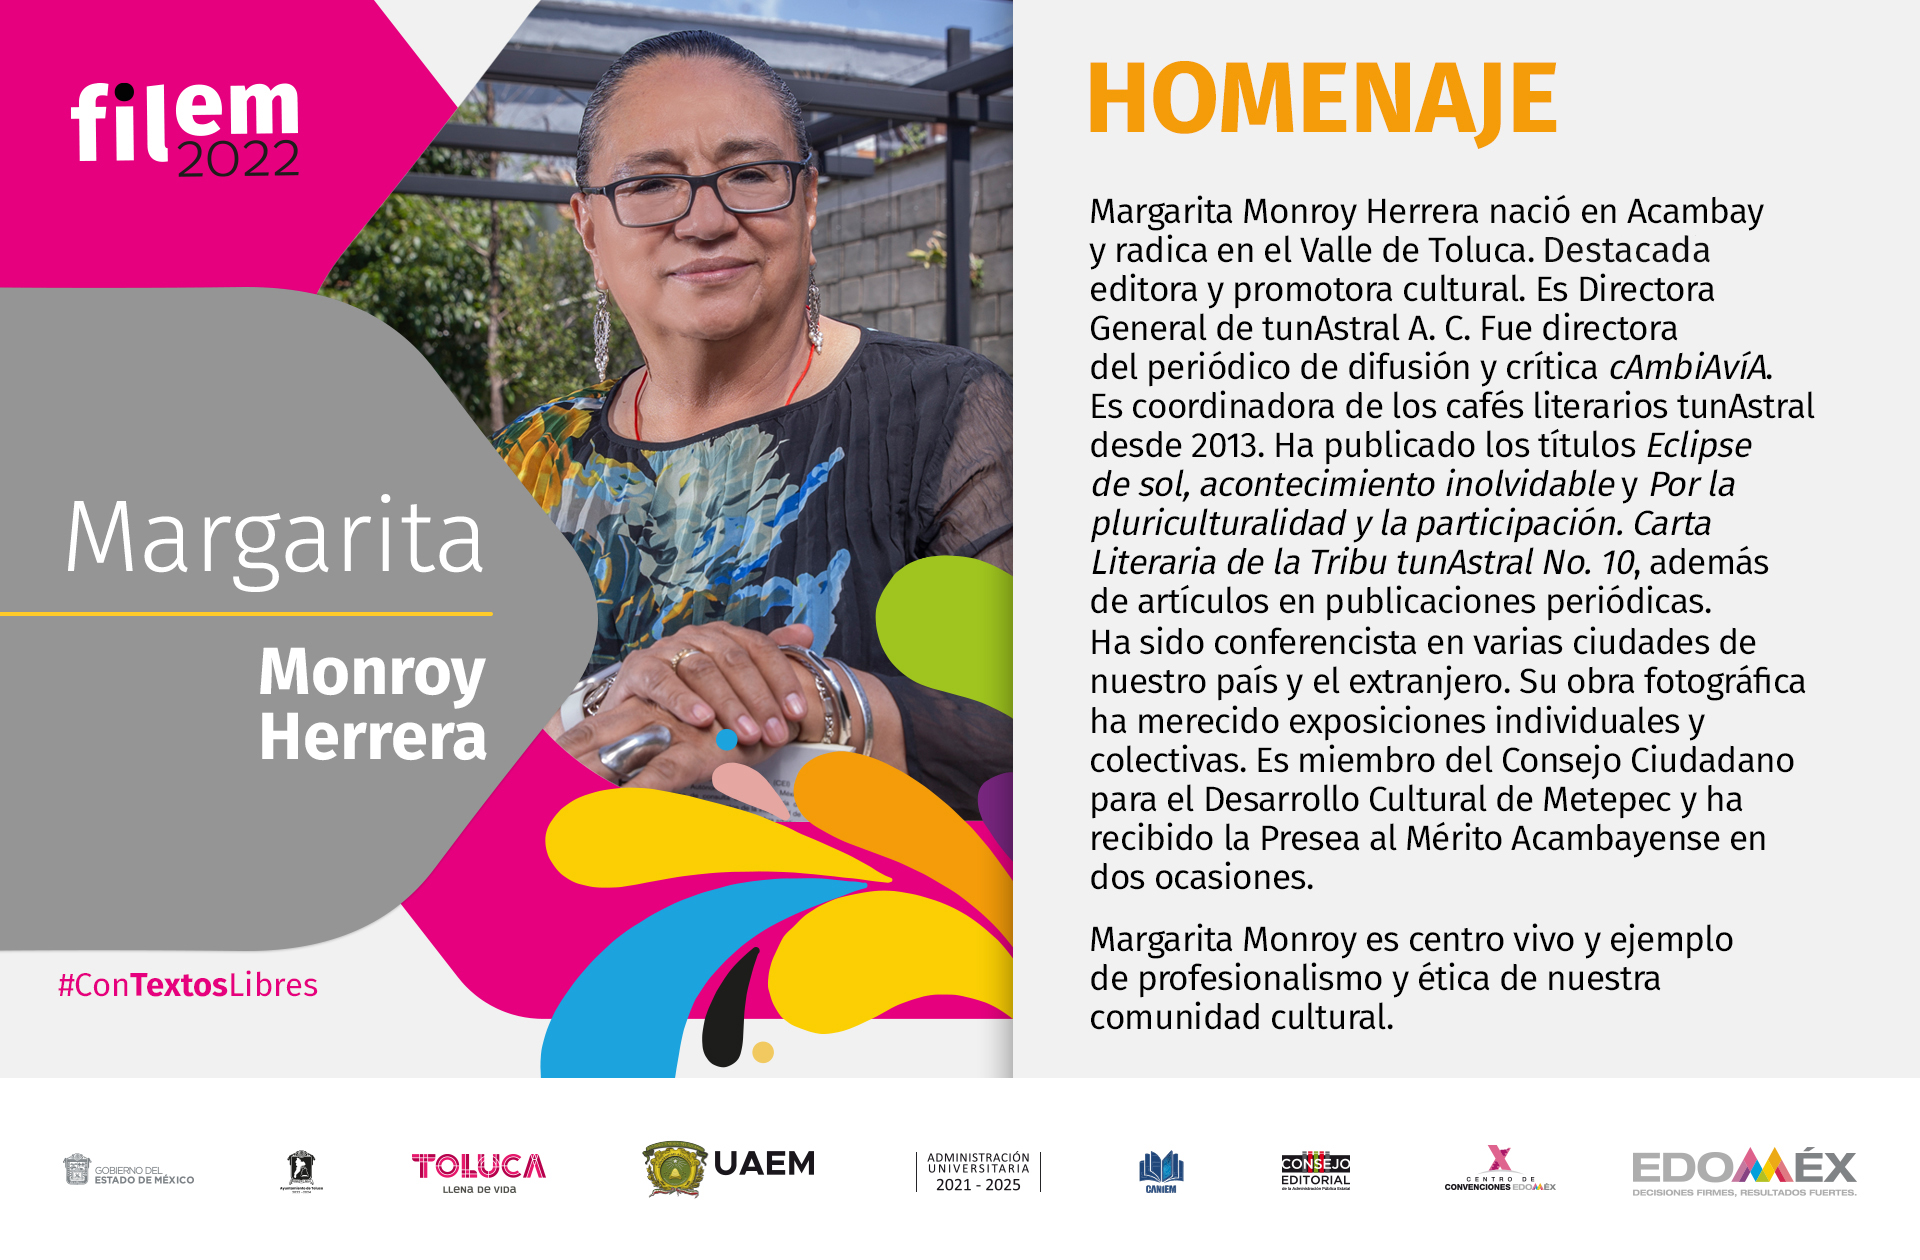 Homenaje Margarita Monroy Herrera